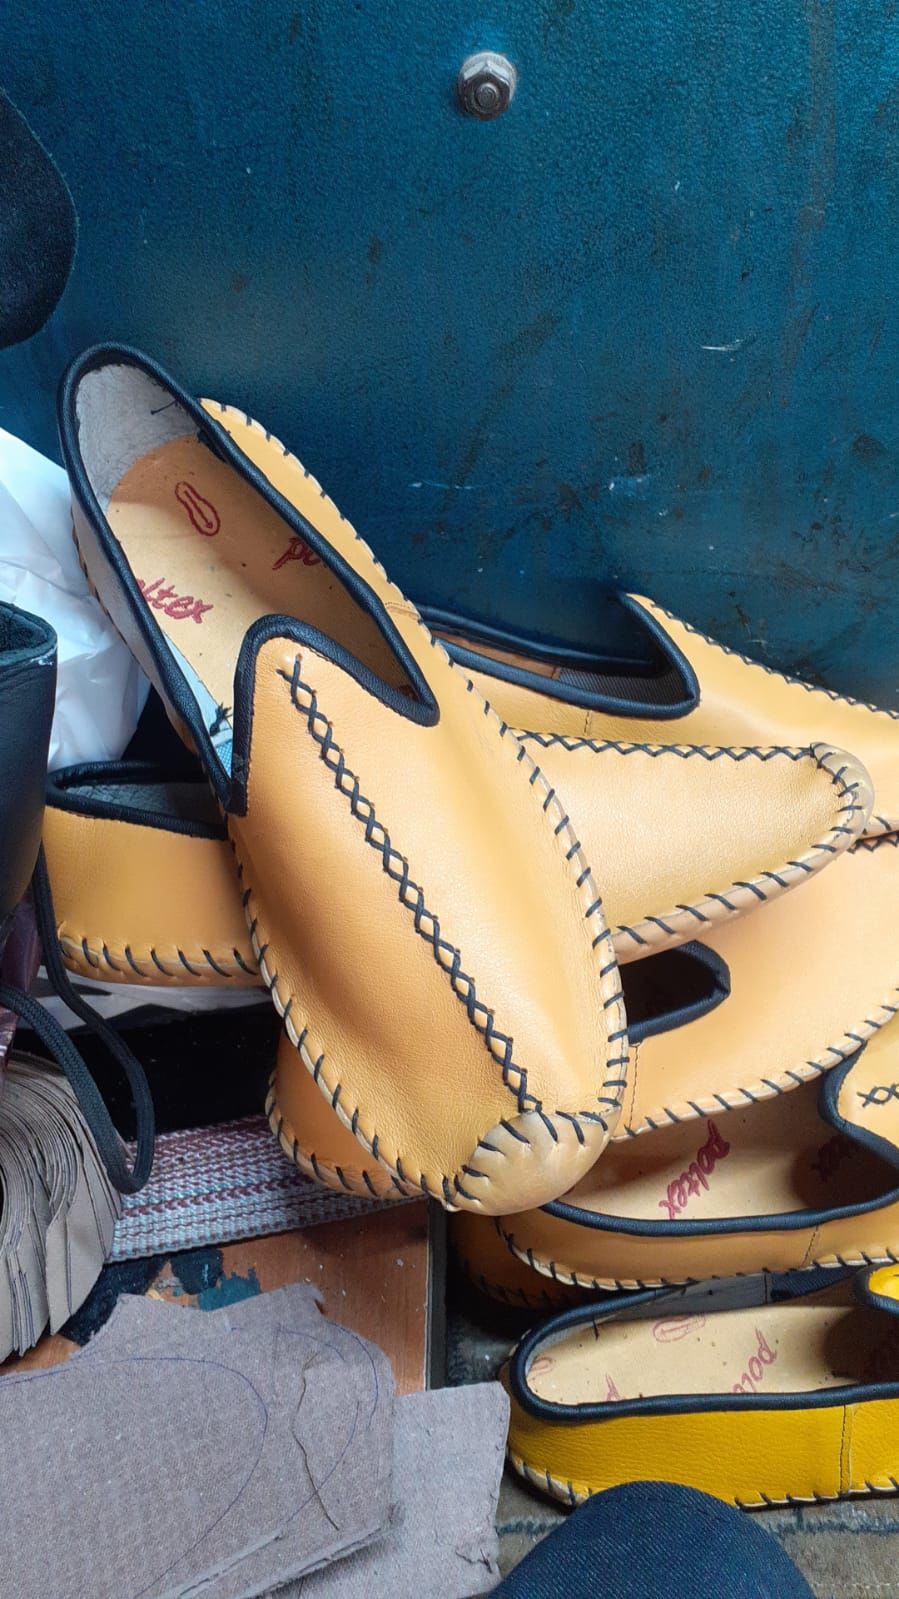 Antep Yemeni Okçuluk Ayakkabısı Okçu Ayakkabı